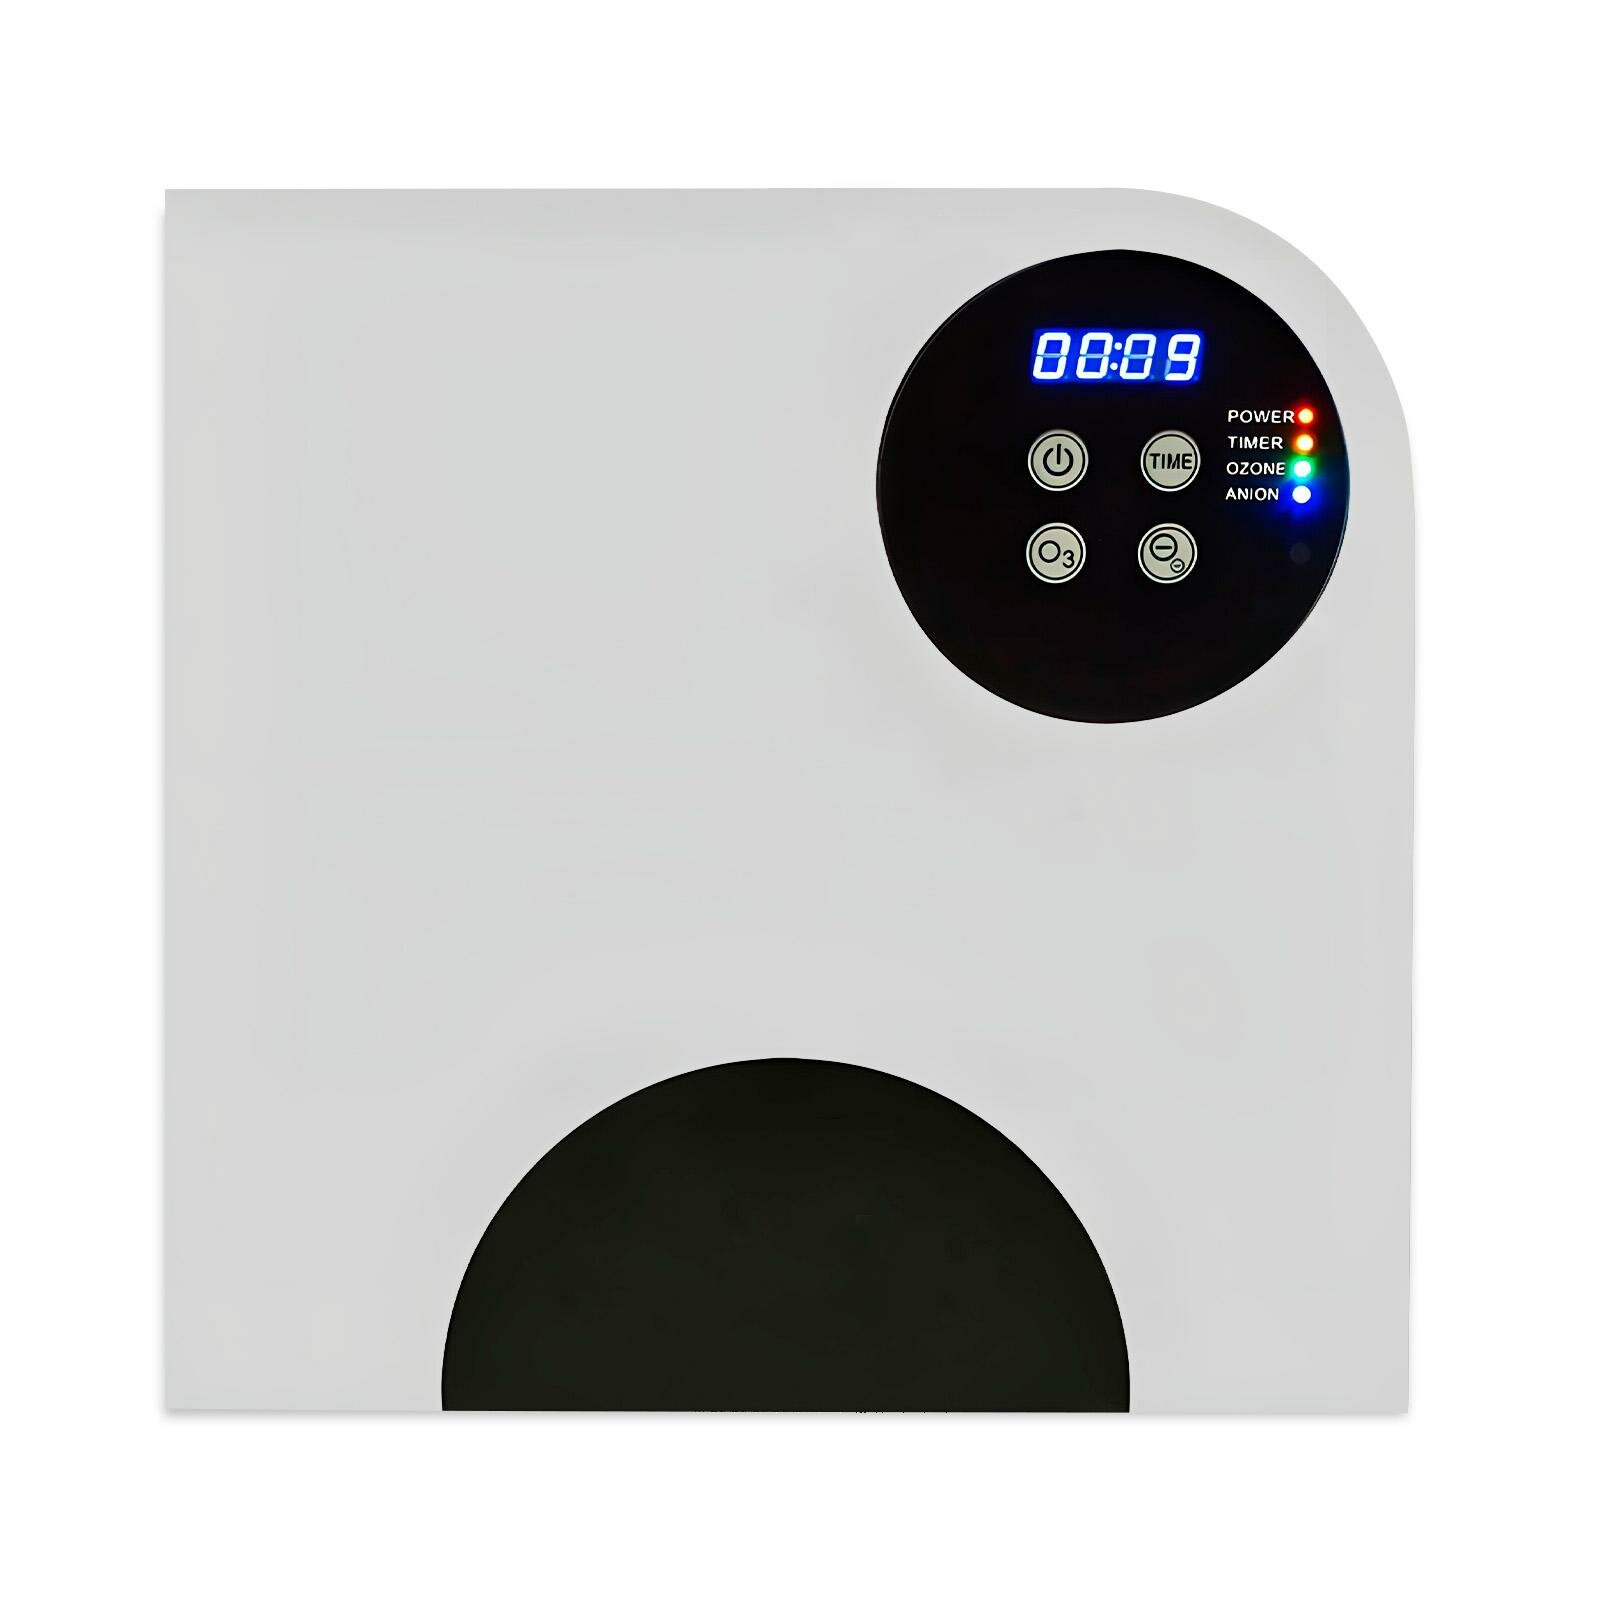 Прибор для озонирования и ионизирования воздуха - озонатор-ионизатор HD com Mod:RMD (A5) (Q23709OZO) в квартиру, дома и для воды. 500 мг/час, до 100